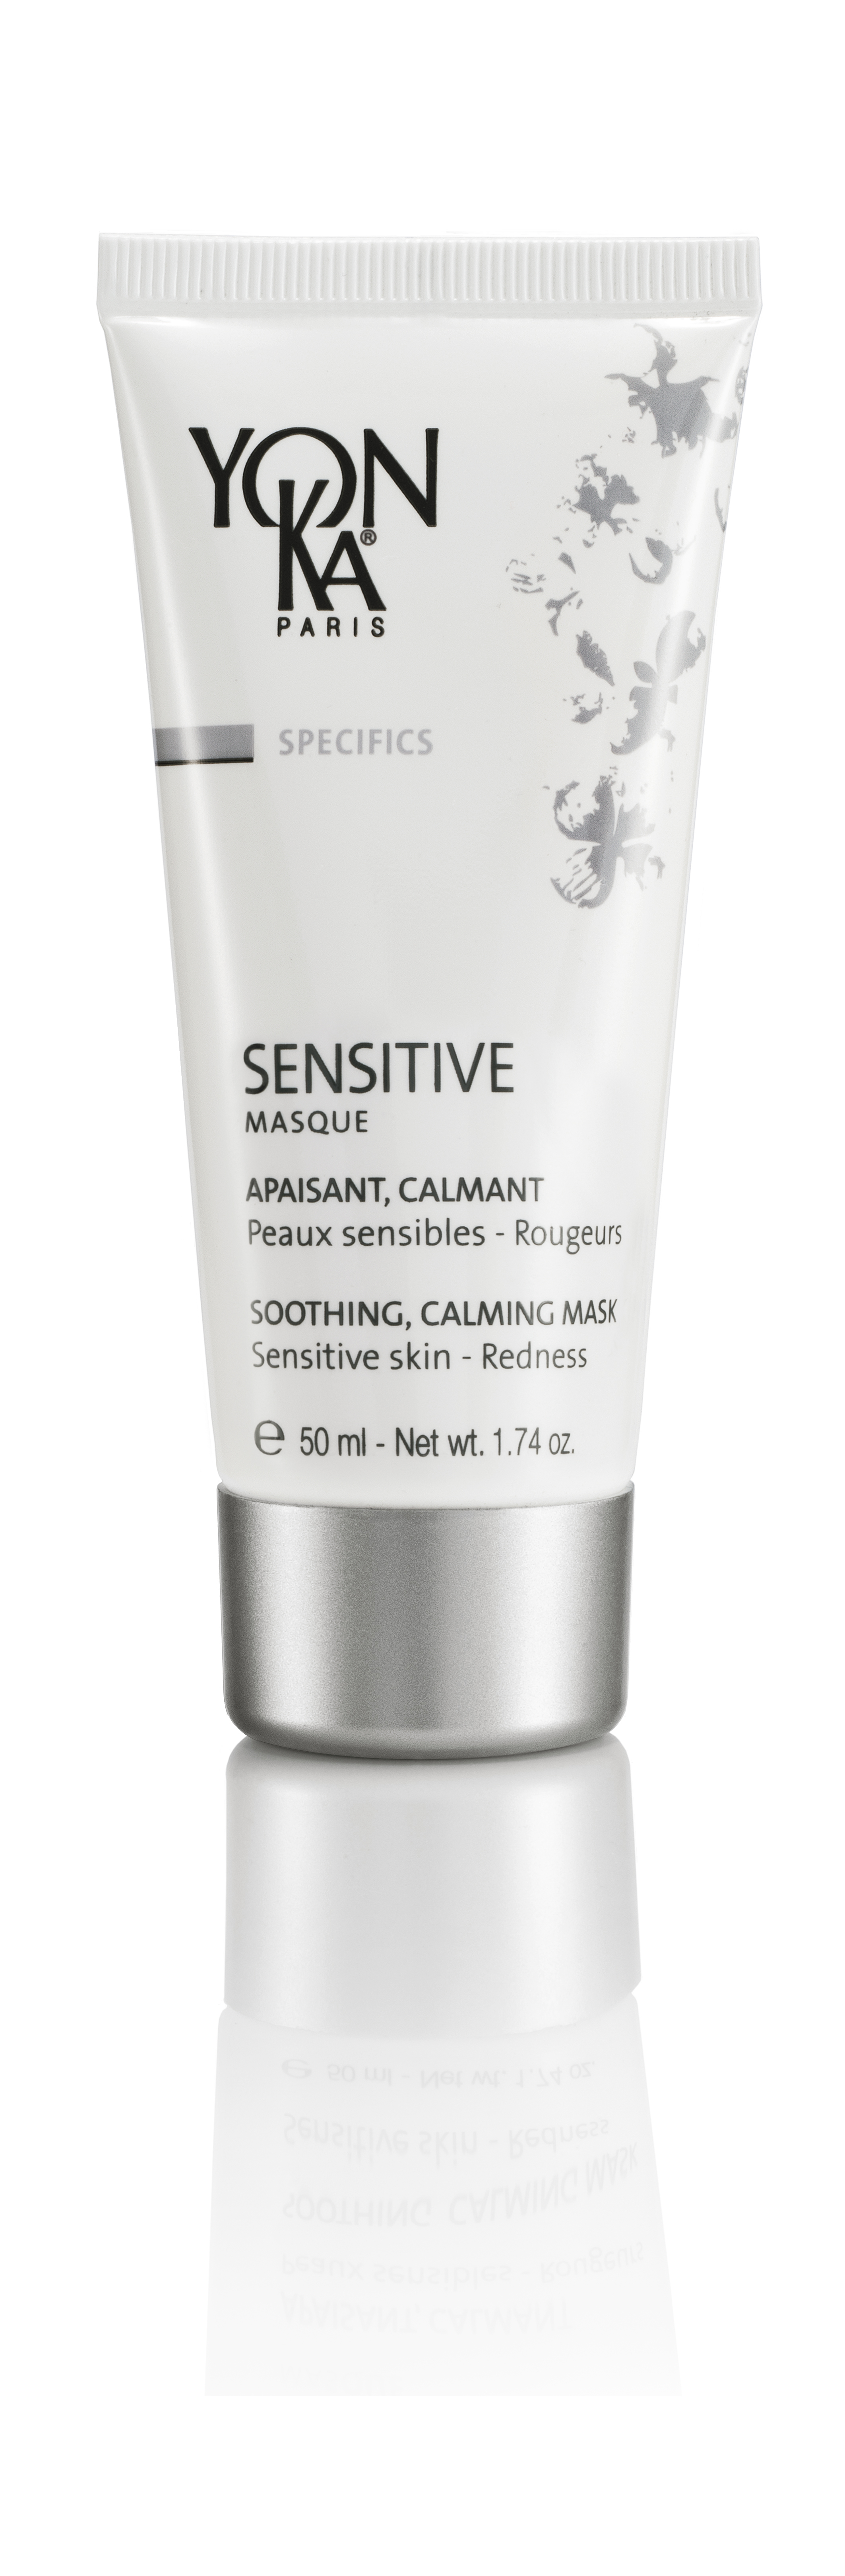 Sensitive Masque (50ml)